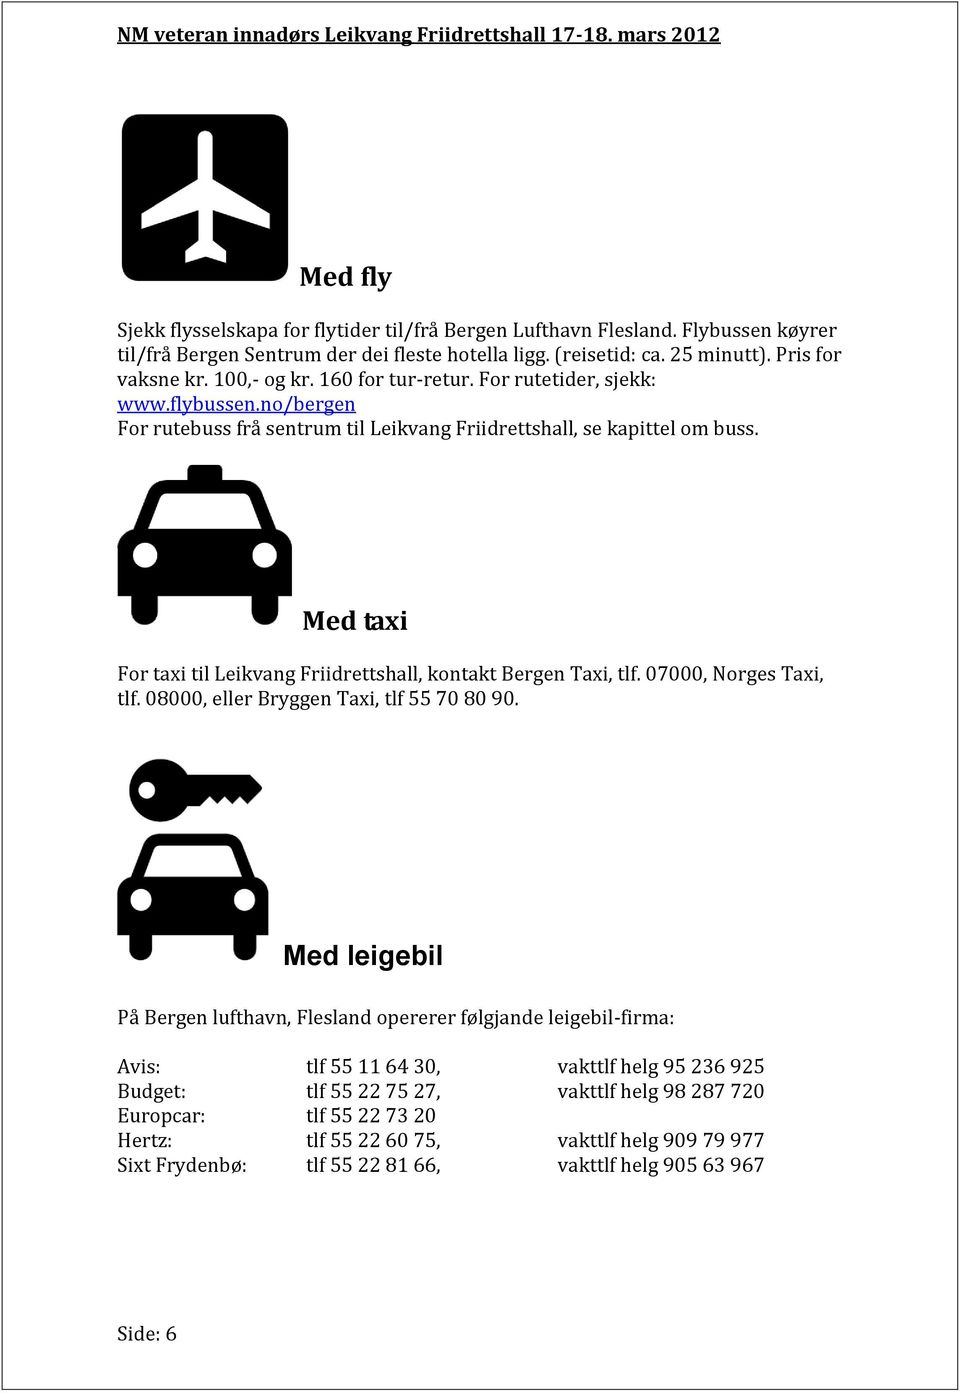 Med taxi For taxi til Leikvang Friidrettshall, kontakt Bergen Taxi, tlf. 07000, Norges Taxi, tlf. 08000, eller Bryggen Taxi, tlf 55 70 80 90.